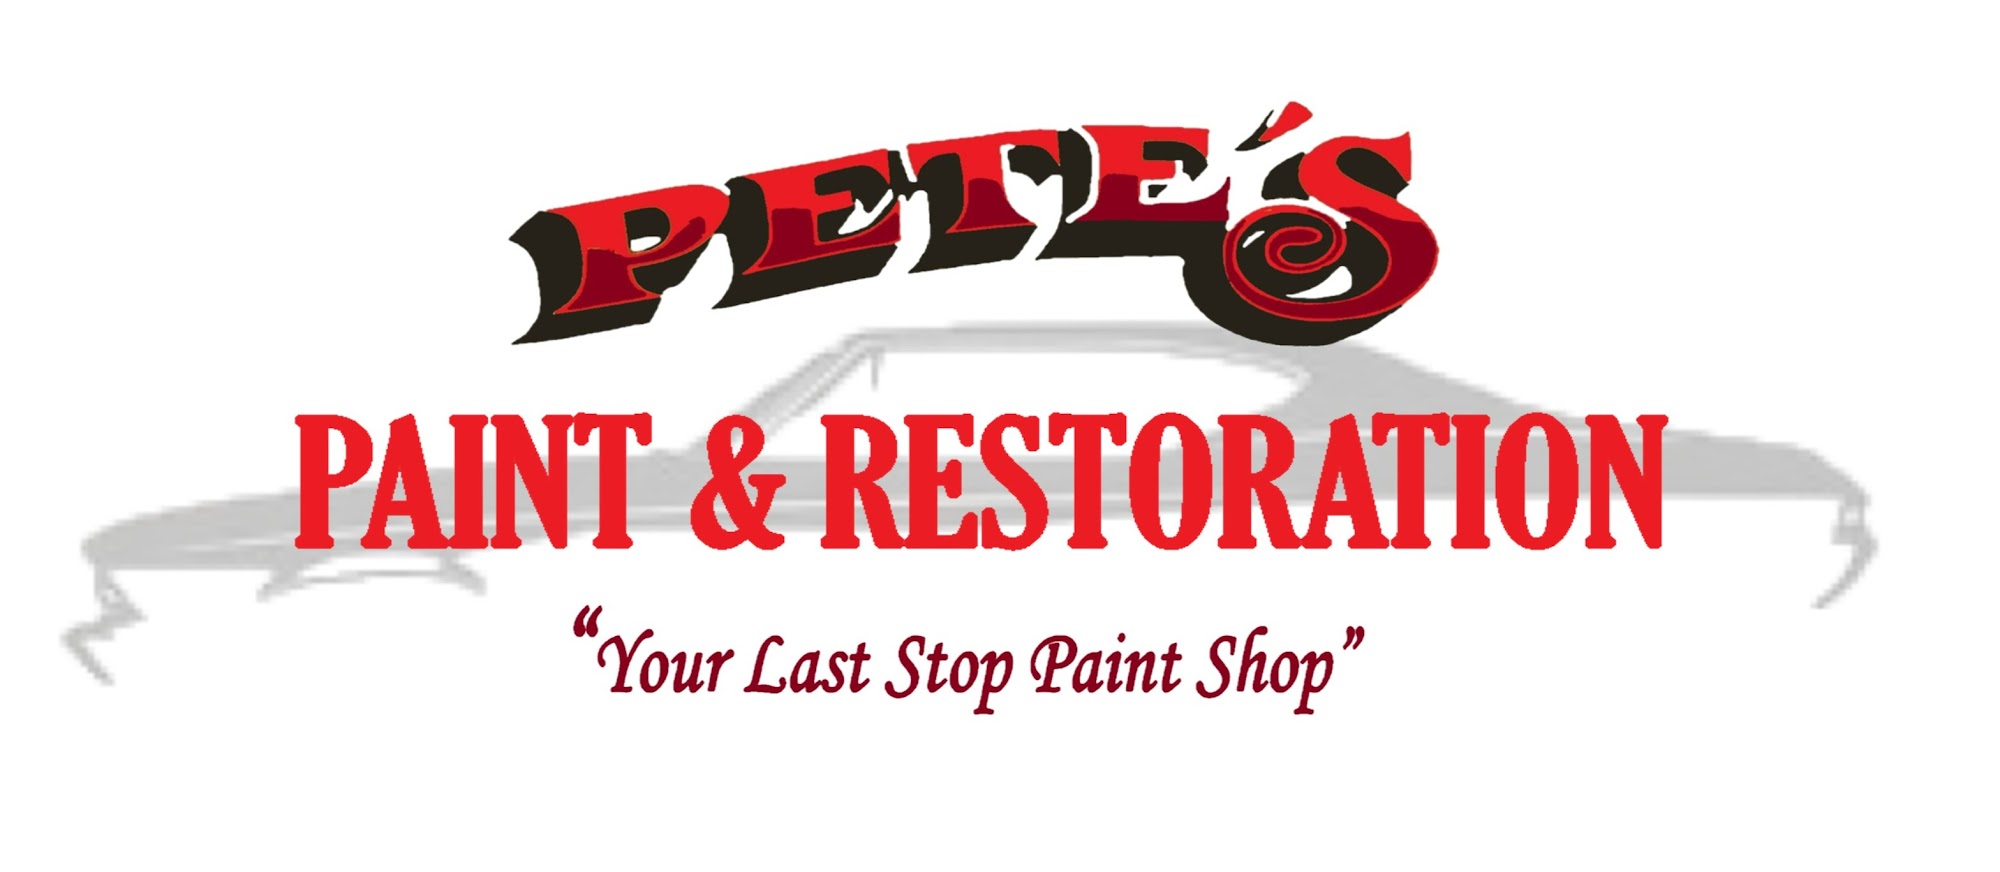 Pete's Paint & Restoration